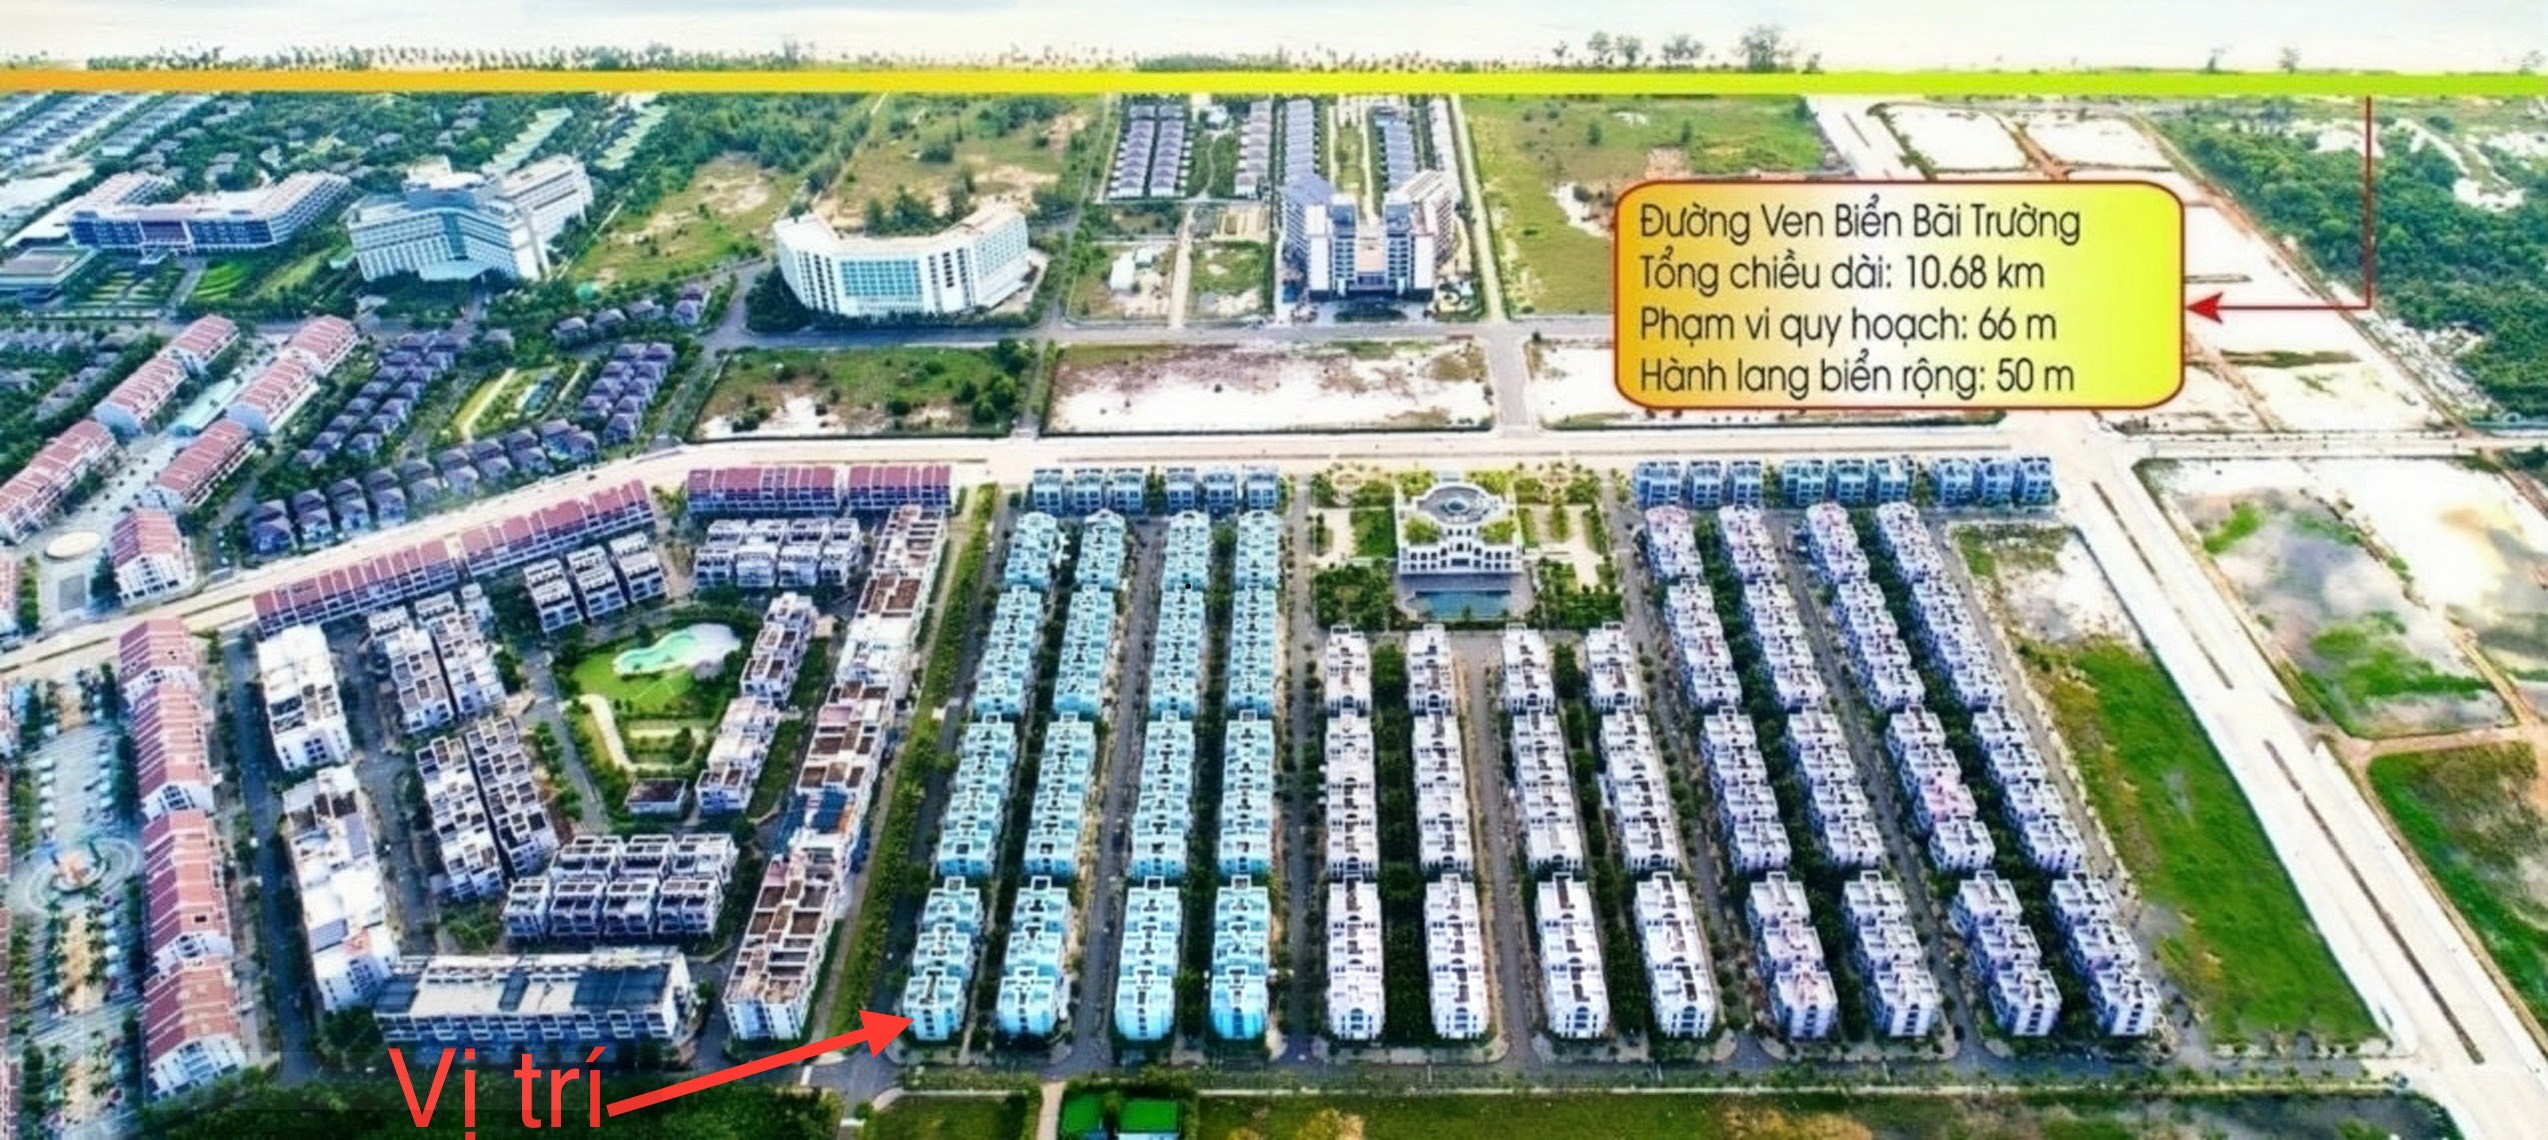 Bán  biệt thự căn góc góc 4 mặt thoáng  trung tâm Bãi Trường  Phú Quốc - CAM KẾT giá tốt nhất thị